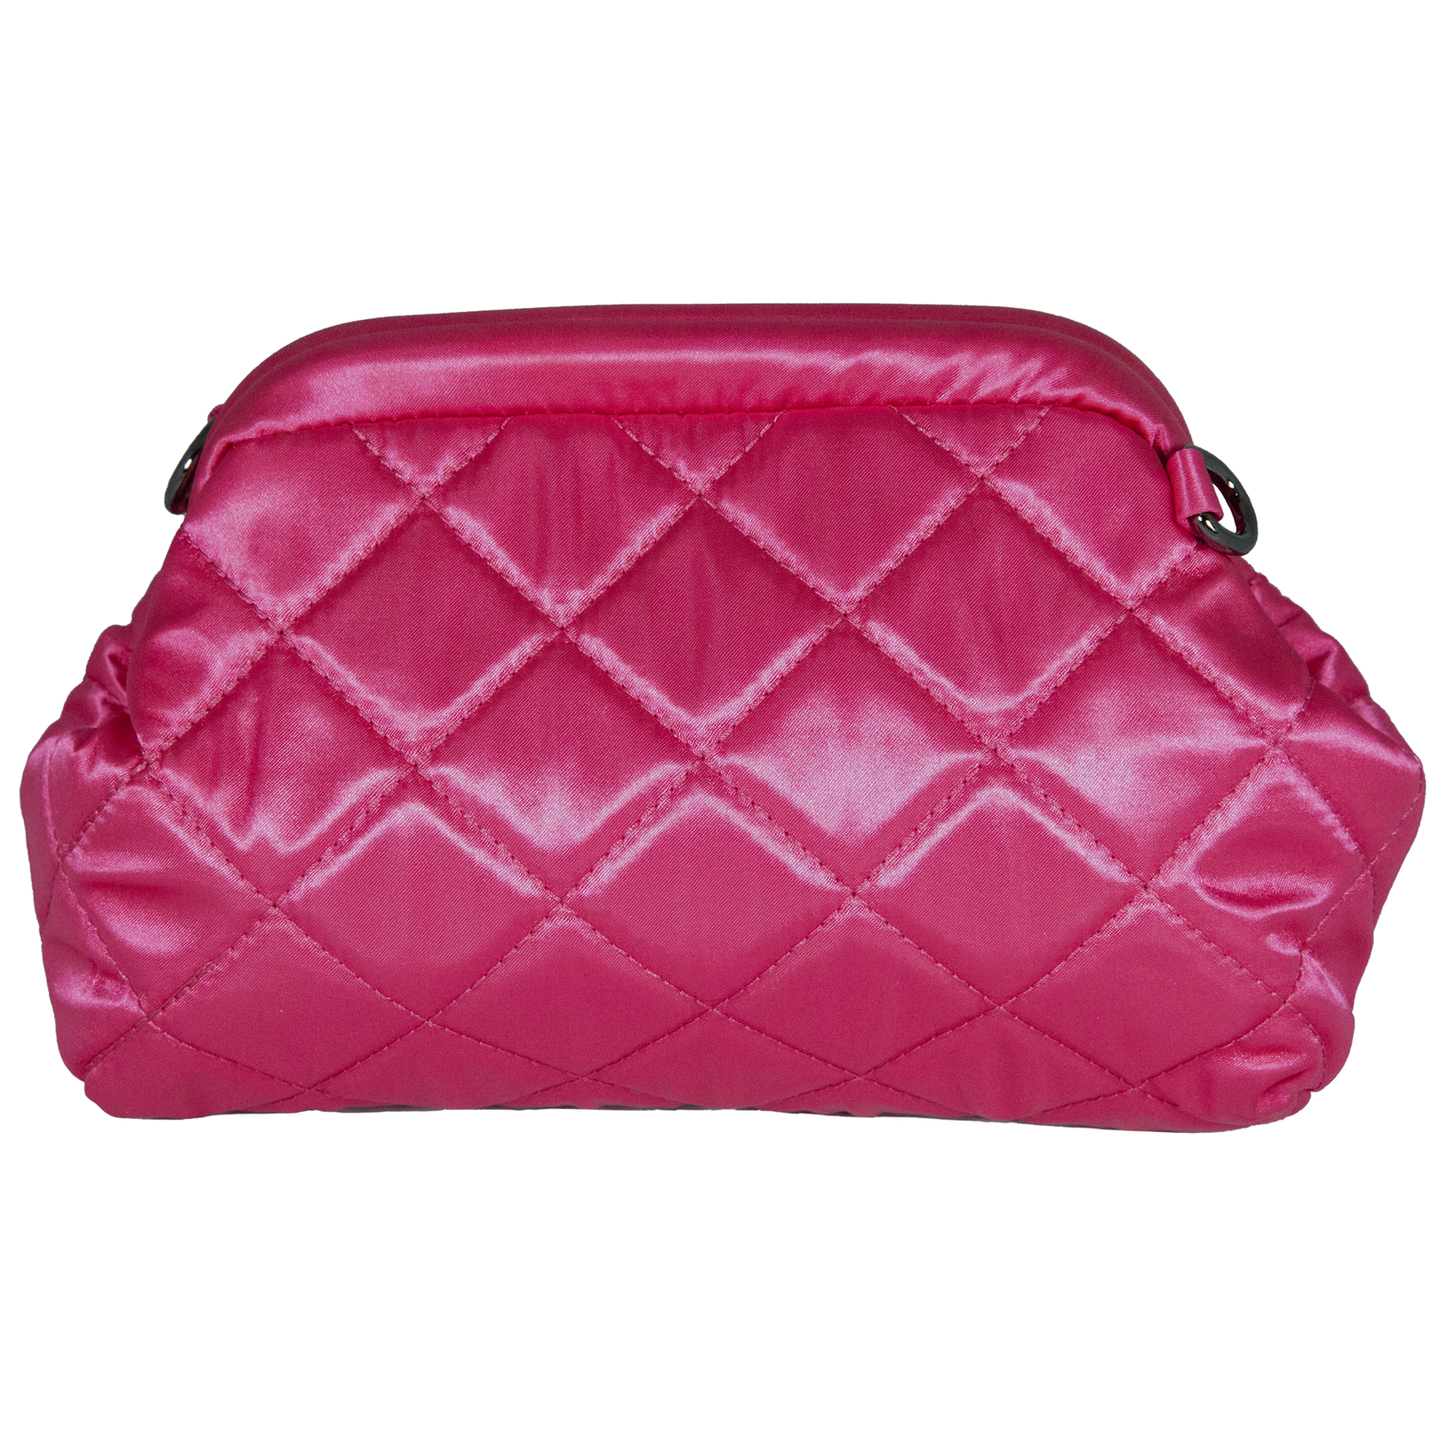 UNTRUE Women’s Haute Couture Chain Design Shoulder Evening Party Purse Clutch Bag Handbag Vegan Leather (FNNR) - Fuscia